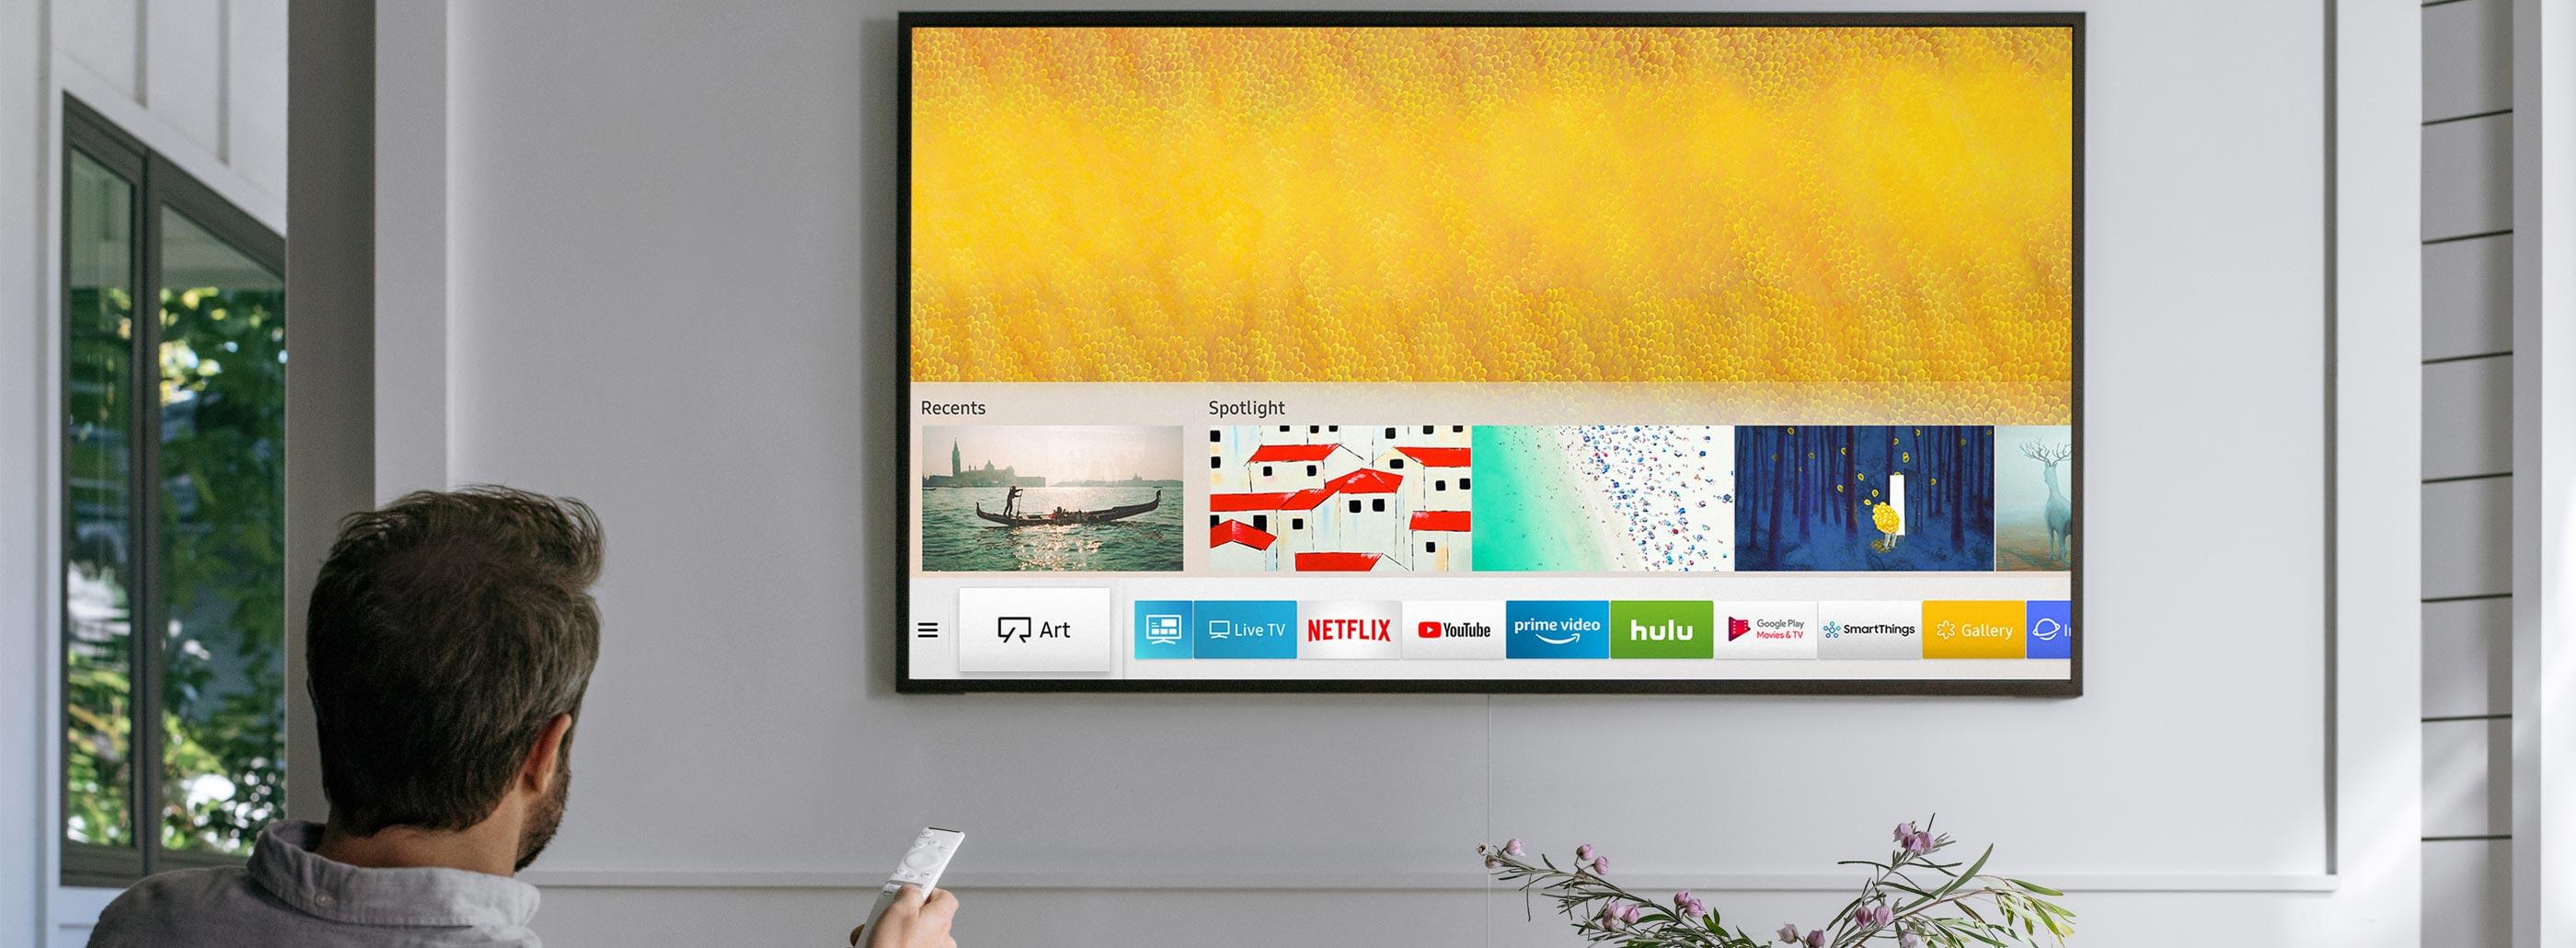 Samsung QLED | Smartest TVs Ever?